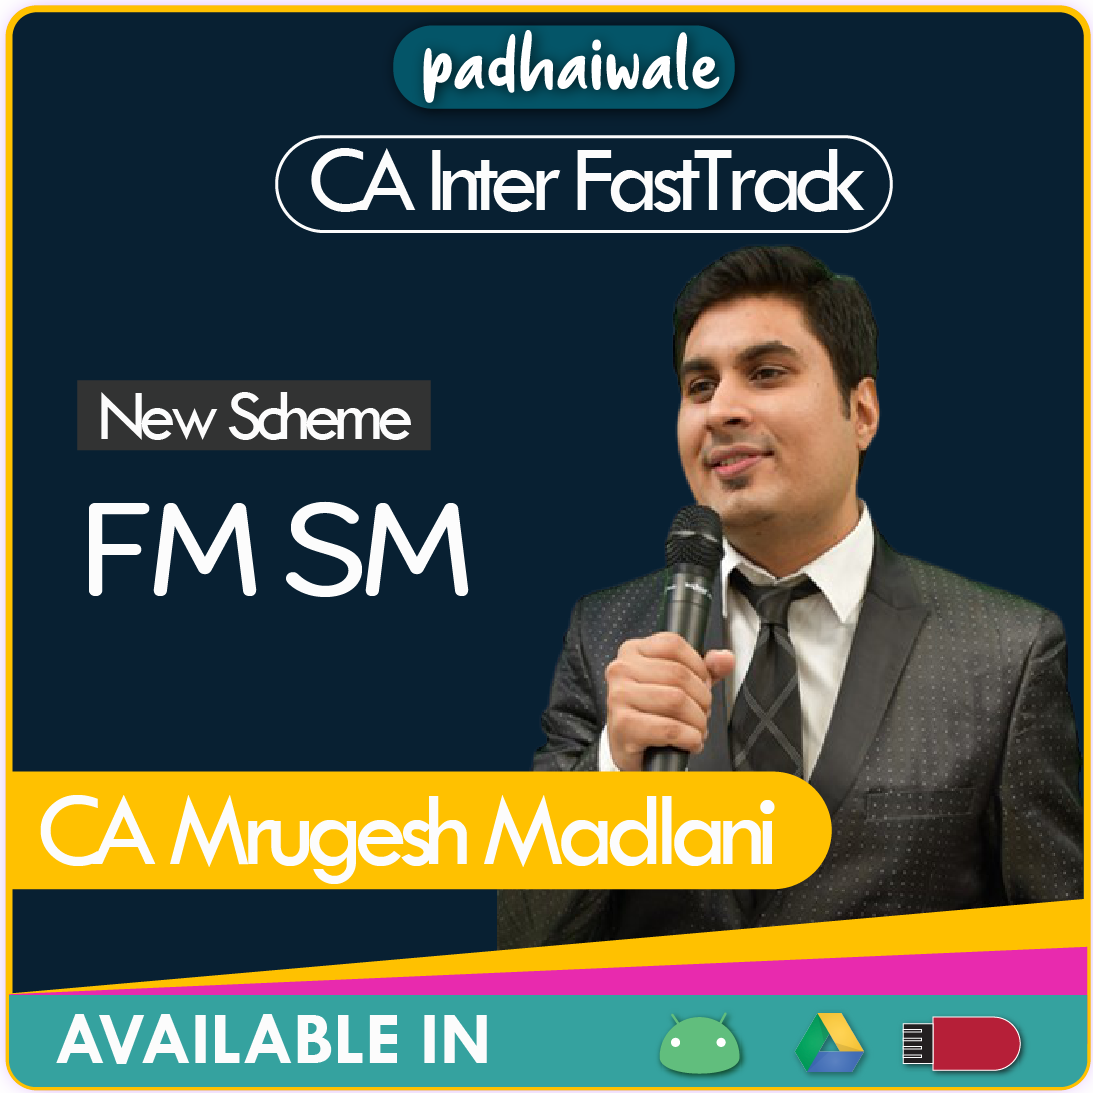 CA Inter FM SM FastTrack New Scheme Mrugesh Madlani